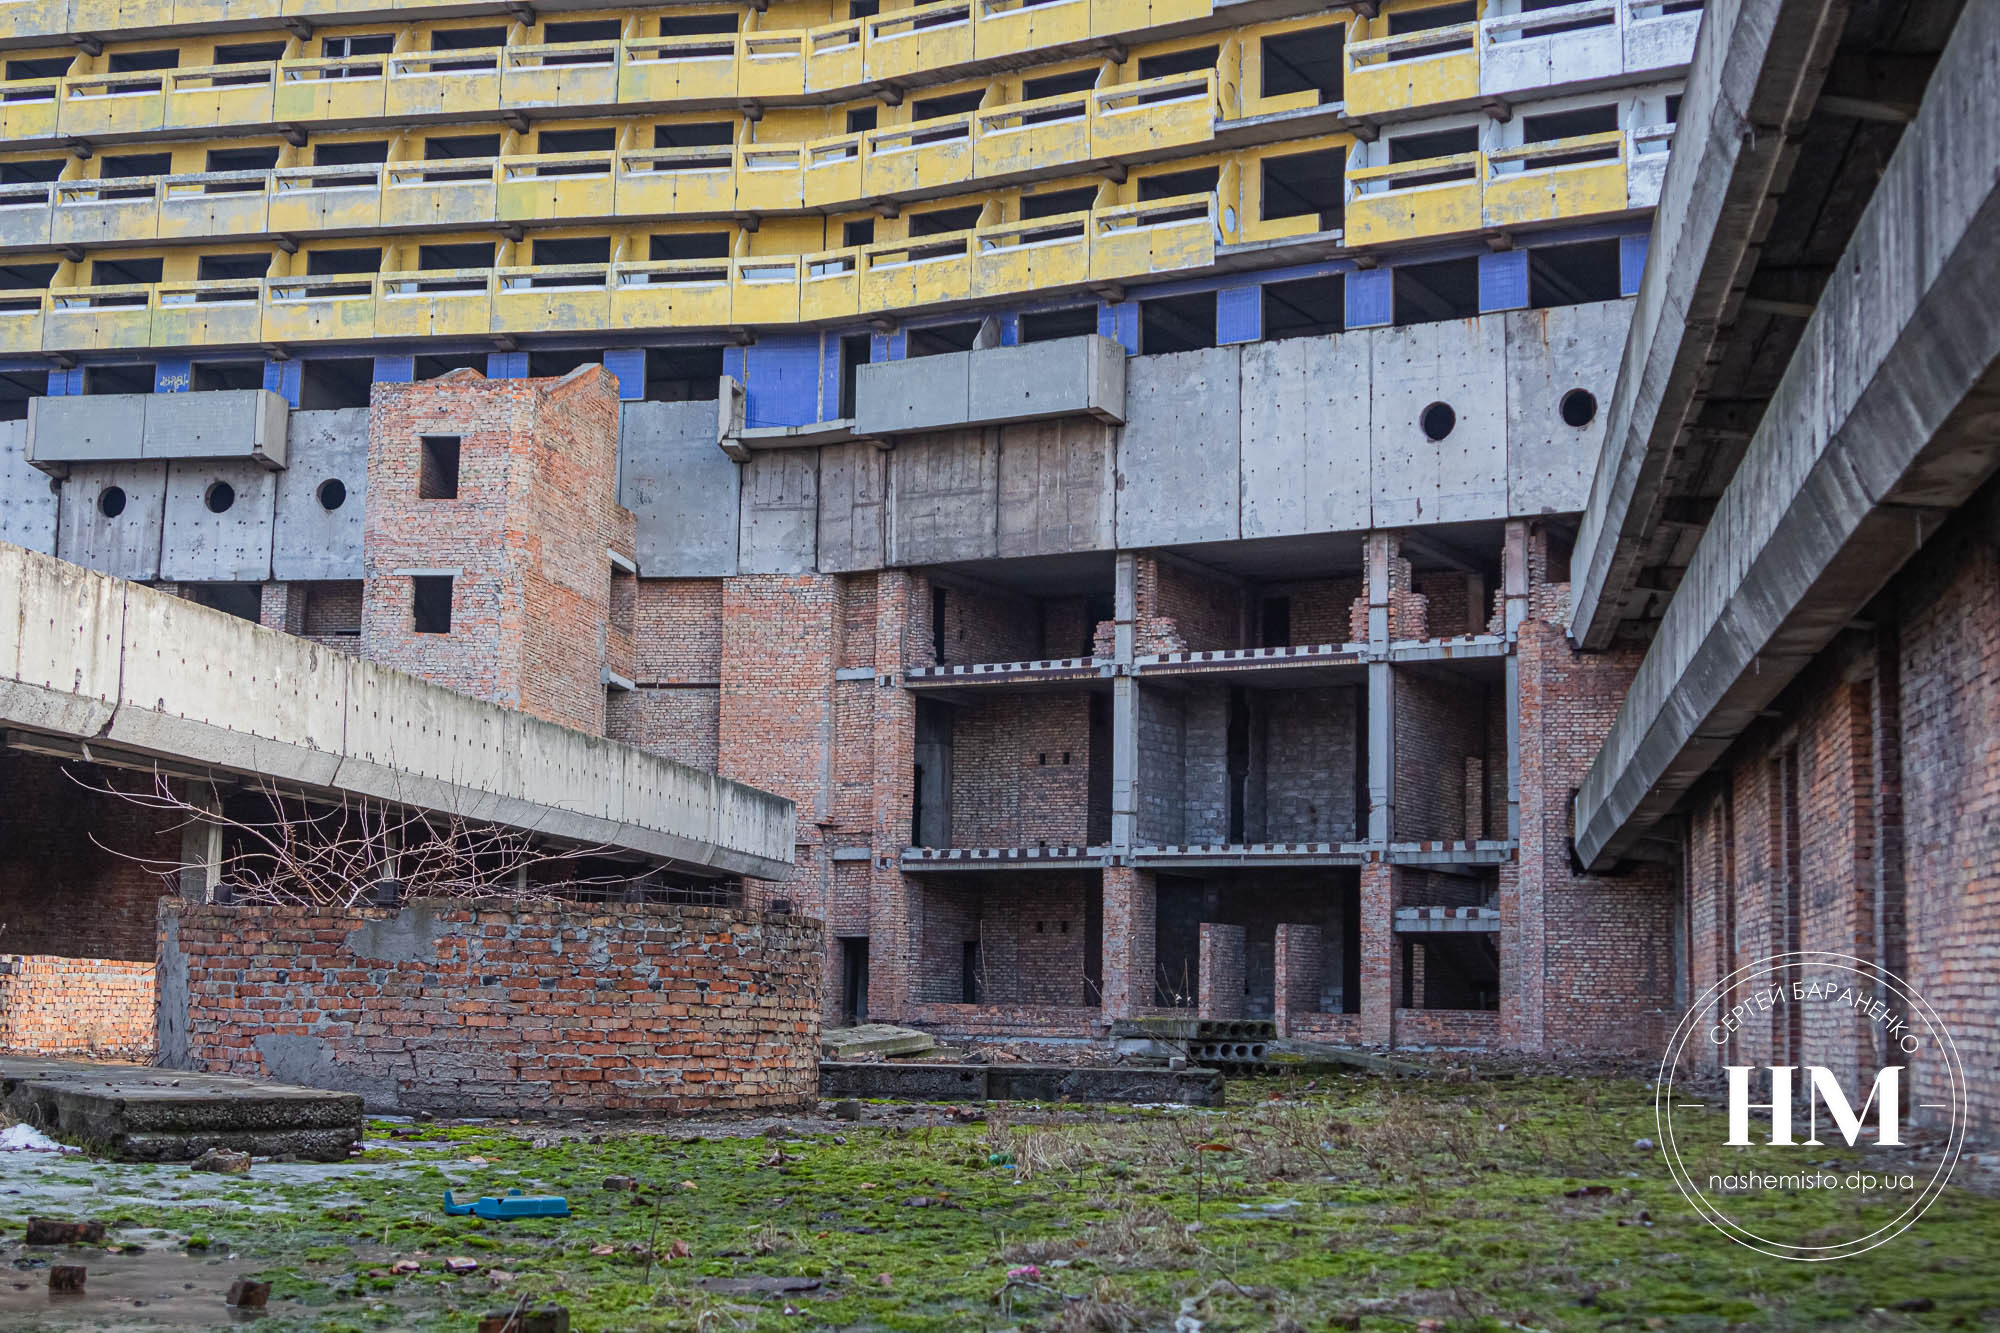 Возможно, здесь построят современные здания - || фото: nashemisto.dp.ua, Сергей Бараненко